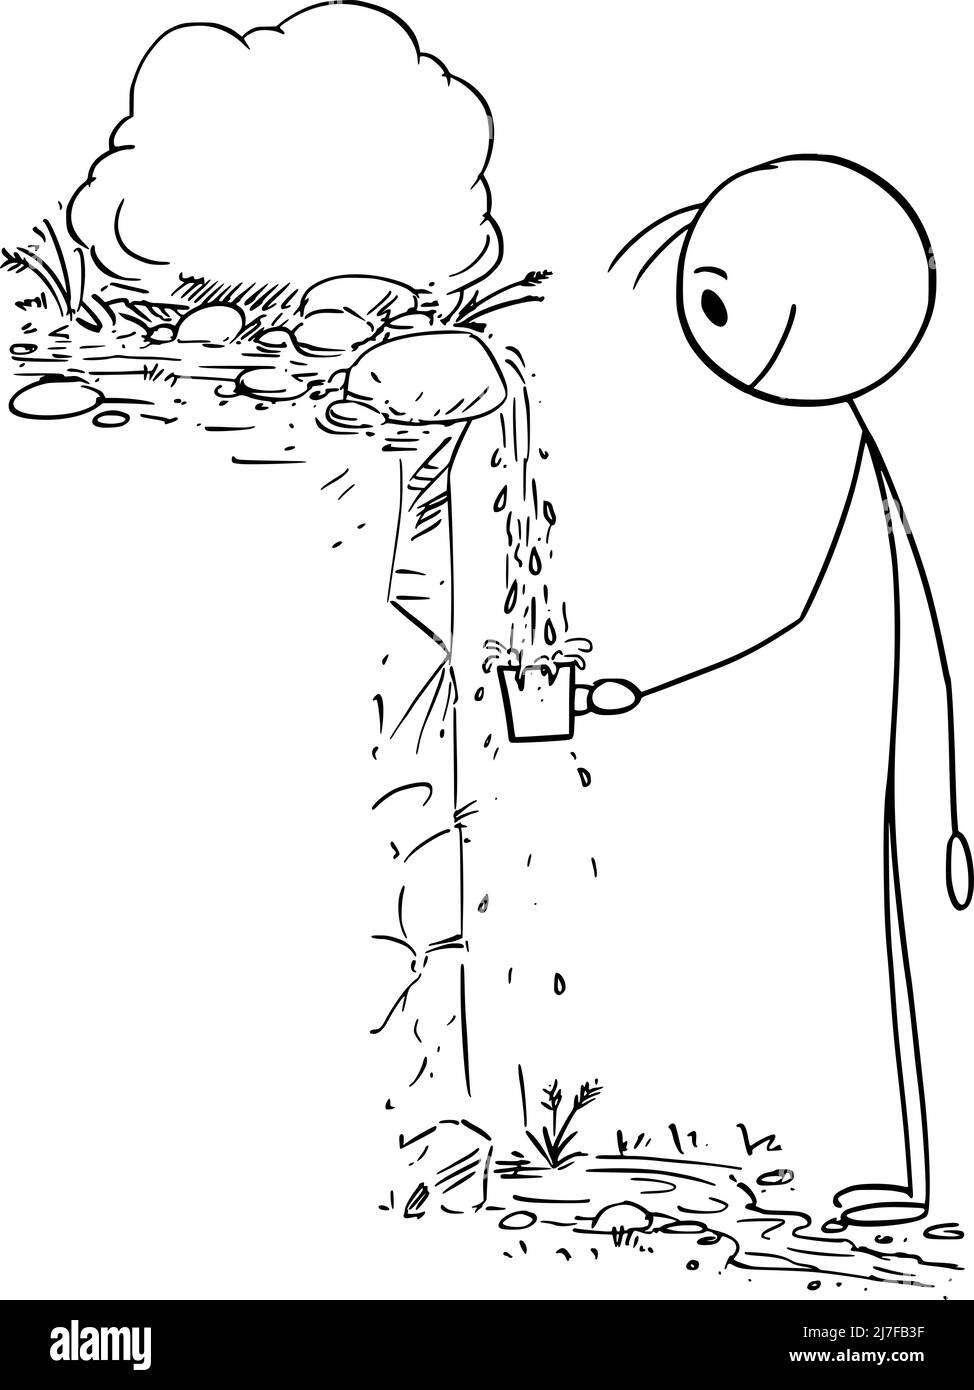 Agua potable de la persona en la naturaleza de la primavera o fuente, Vector Cartoon Stick Ilustración de la figura Ilustración del Vector